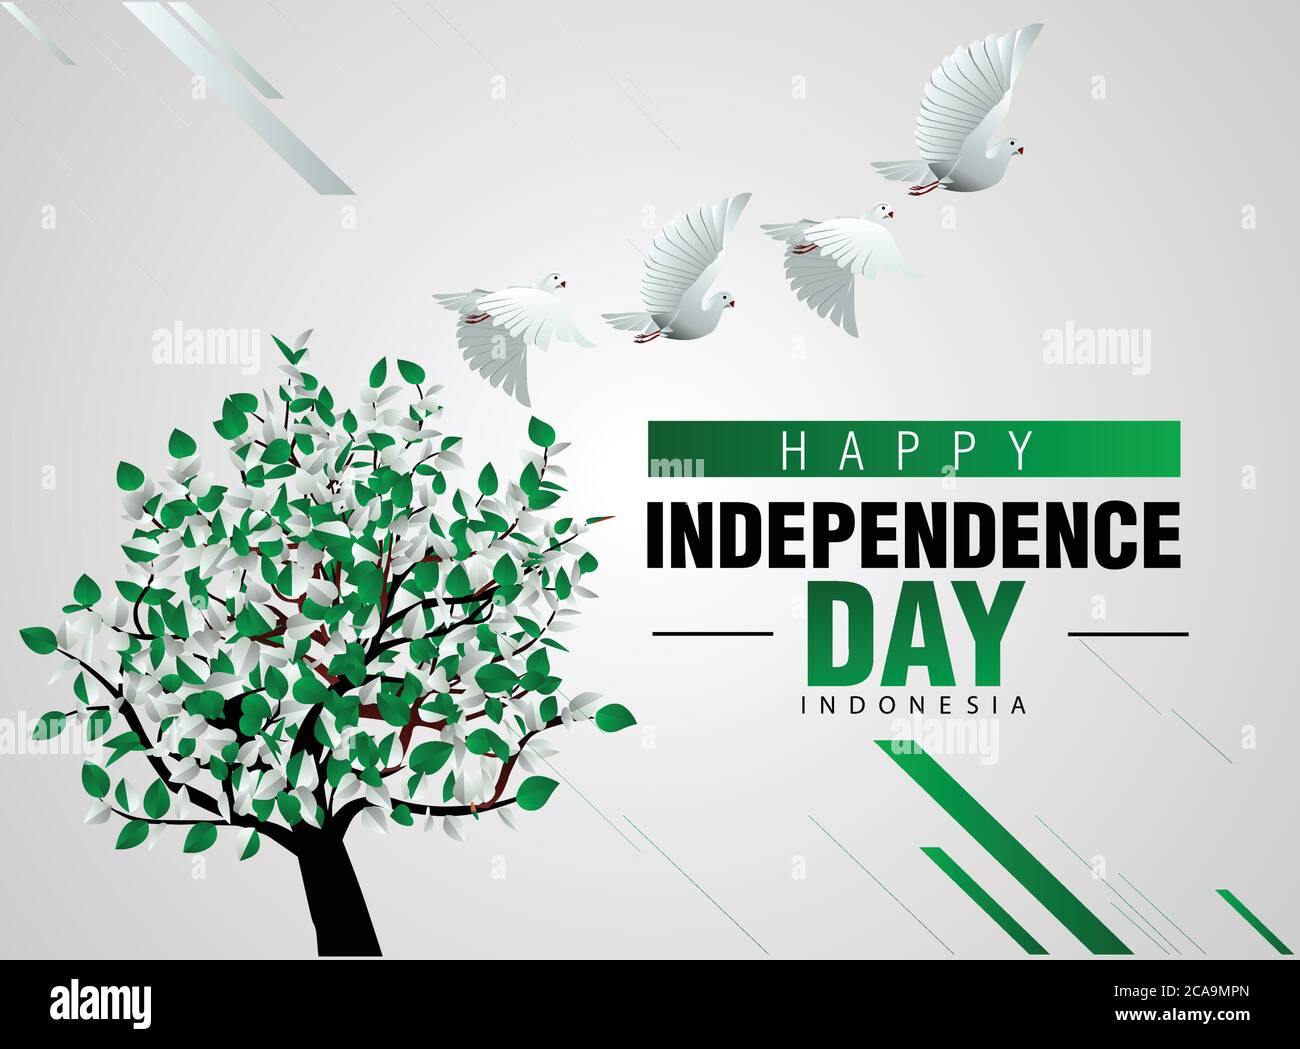 Happy Independence Day Pakistan 14. august. Taube fliegen mit Flagge farbigen Baum. vektor-Illustration Stock Vektor